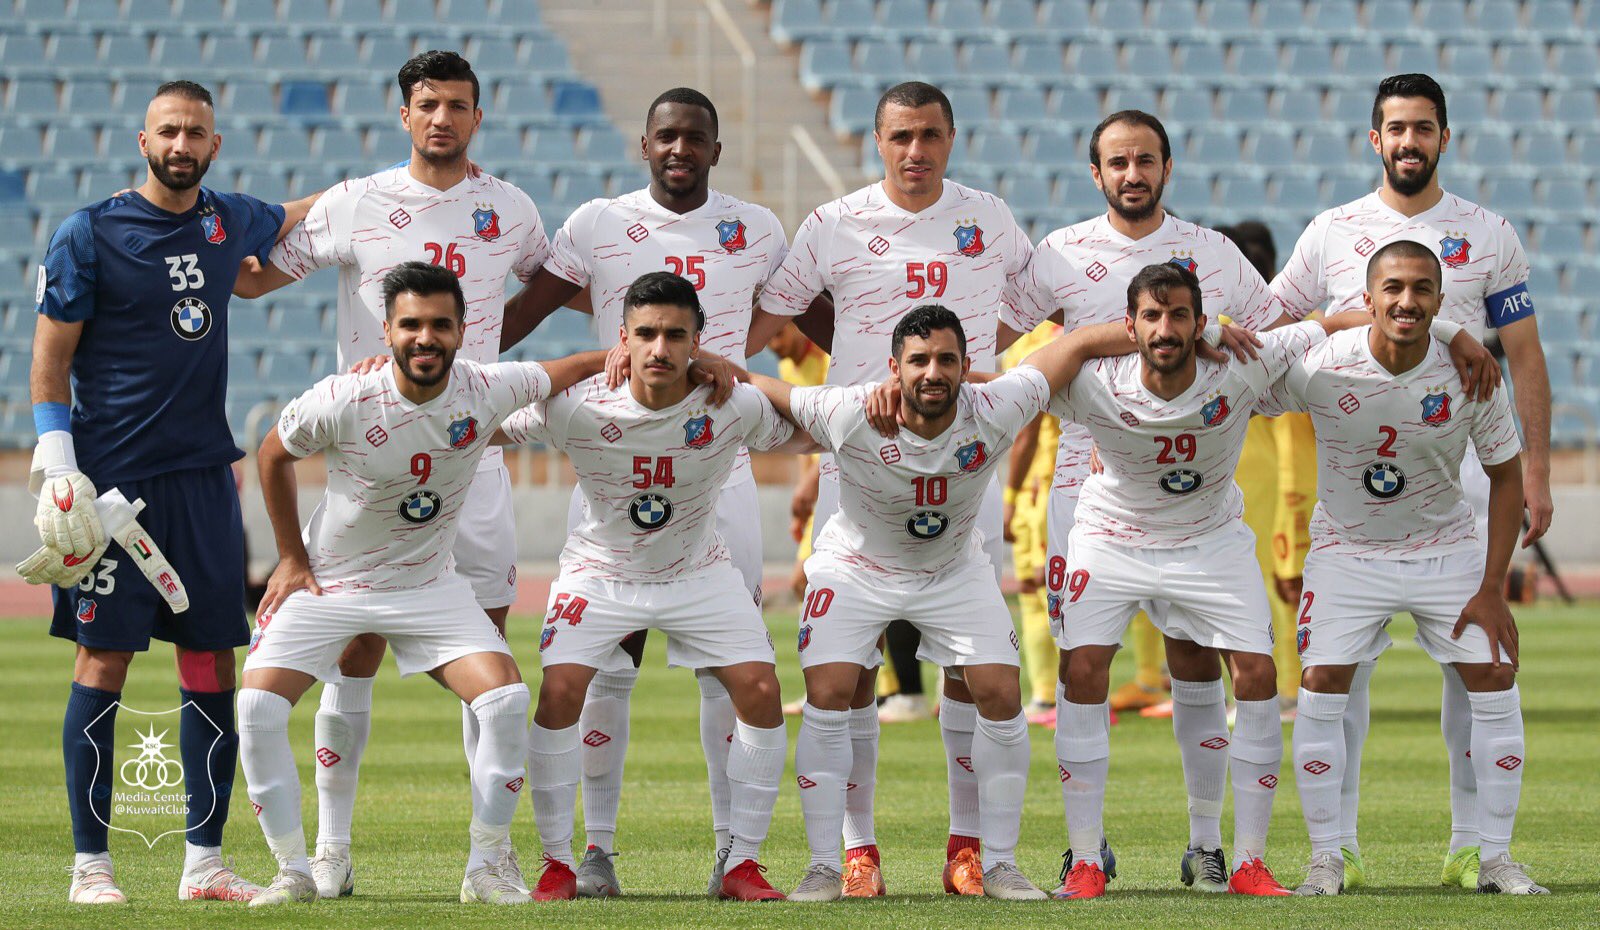 كأس السوبر الكويتية الكويت يعادل رقم القادسية بلقبه السادس